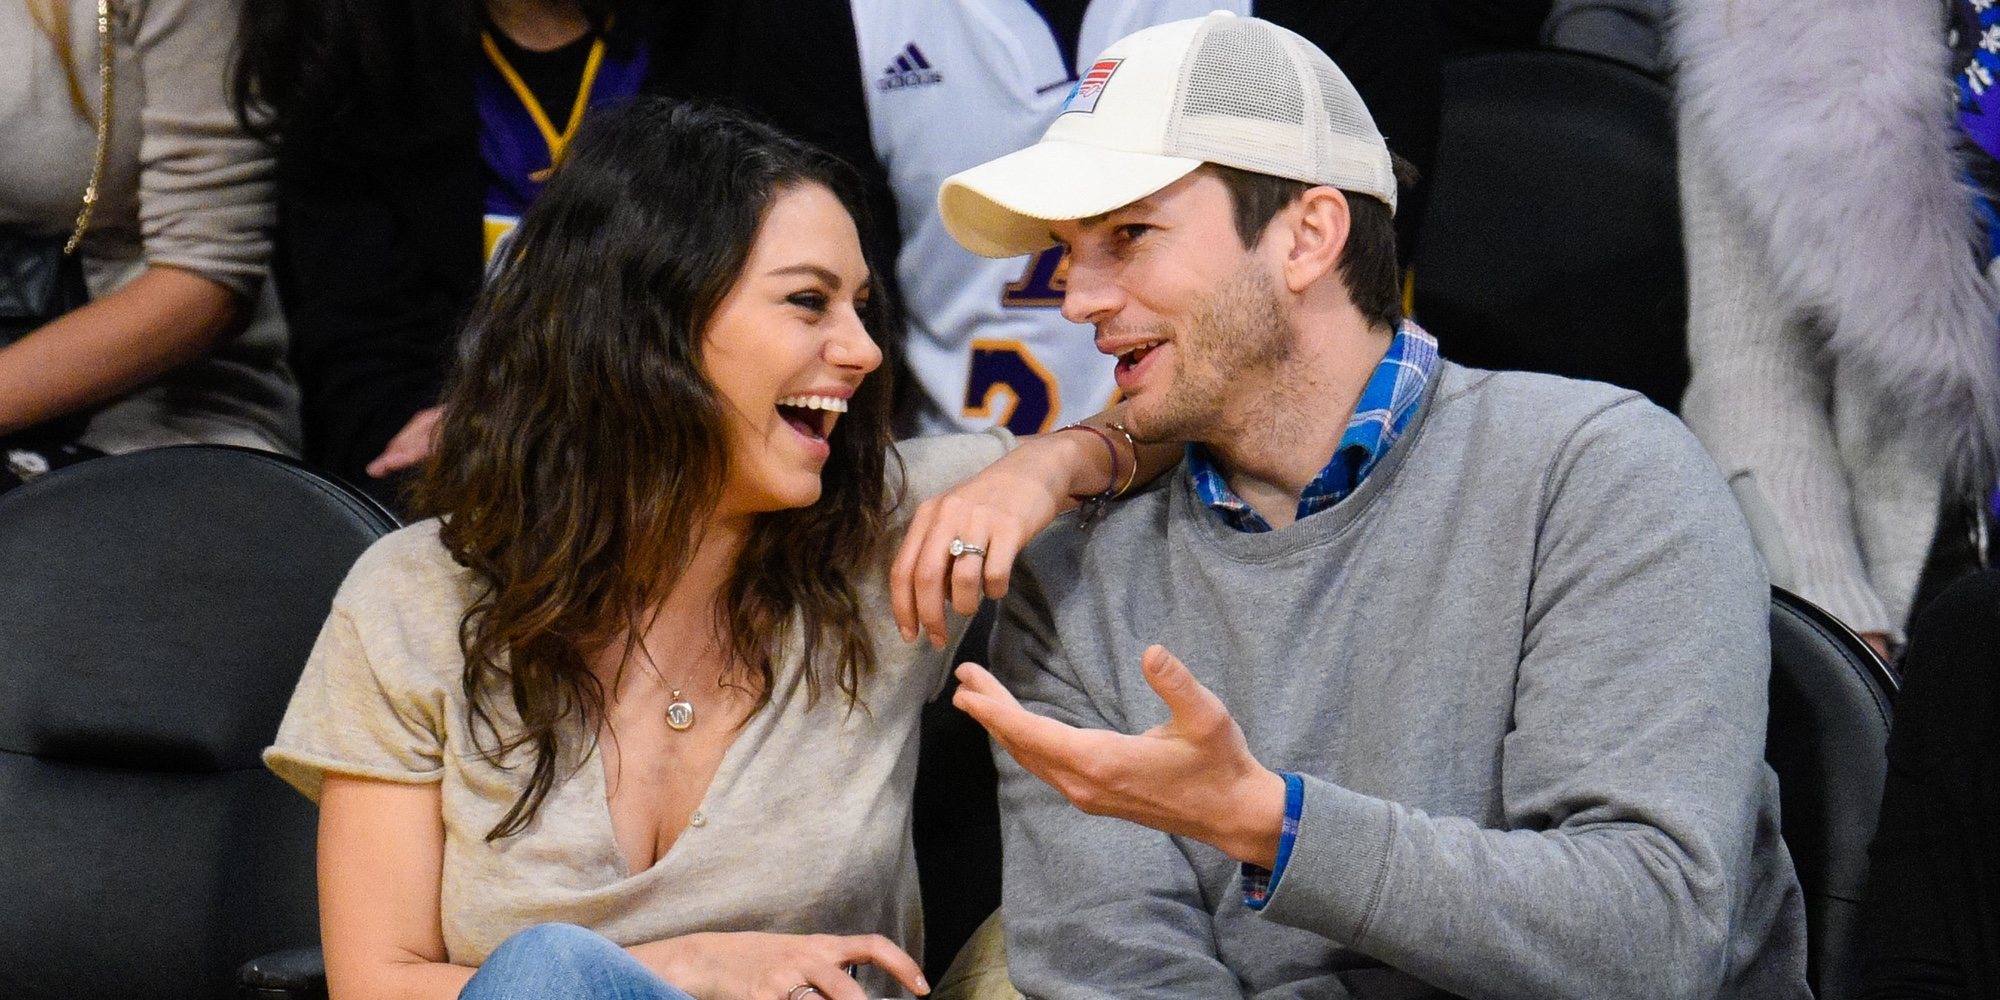 Ashton Kutcher y Mila Kunis pasan de los Oscar 2018 y se van de cita romántica